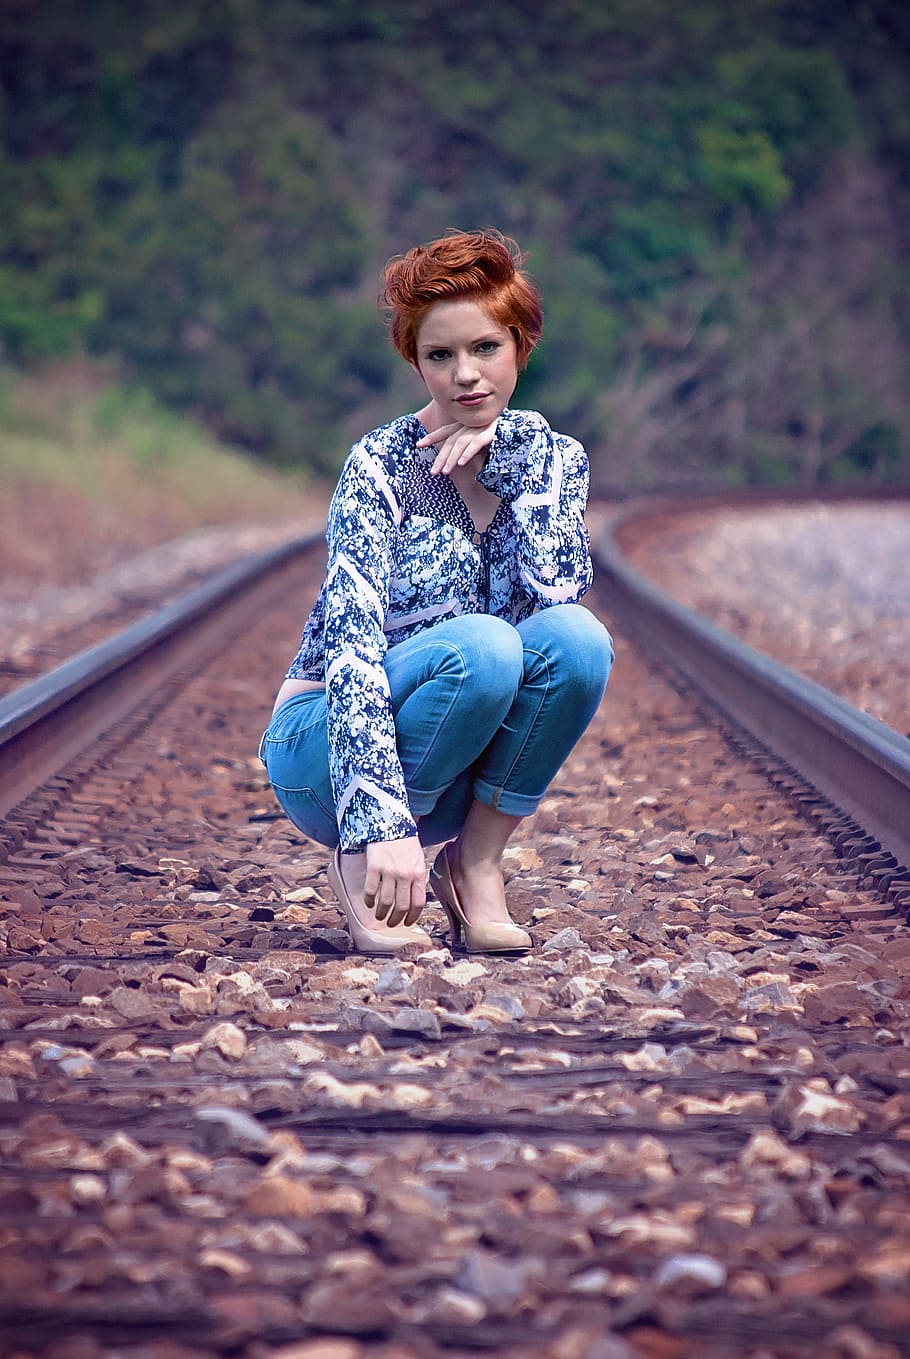 Photoshoot on railway station | Photoshoot photography, Photoshoot, Fashion